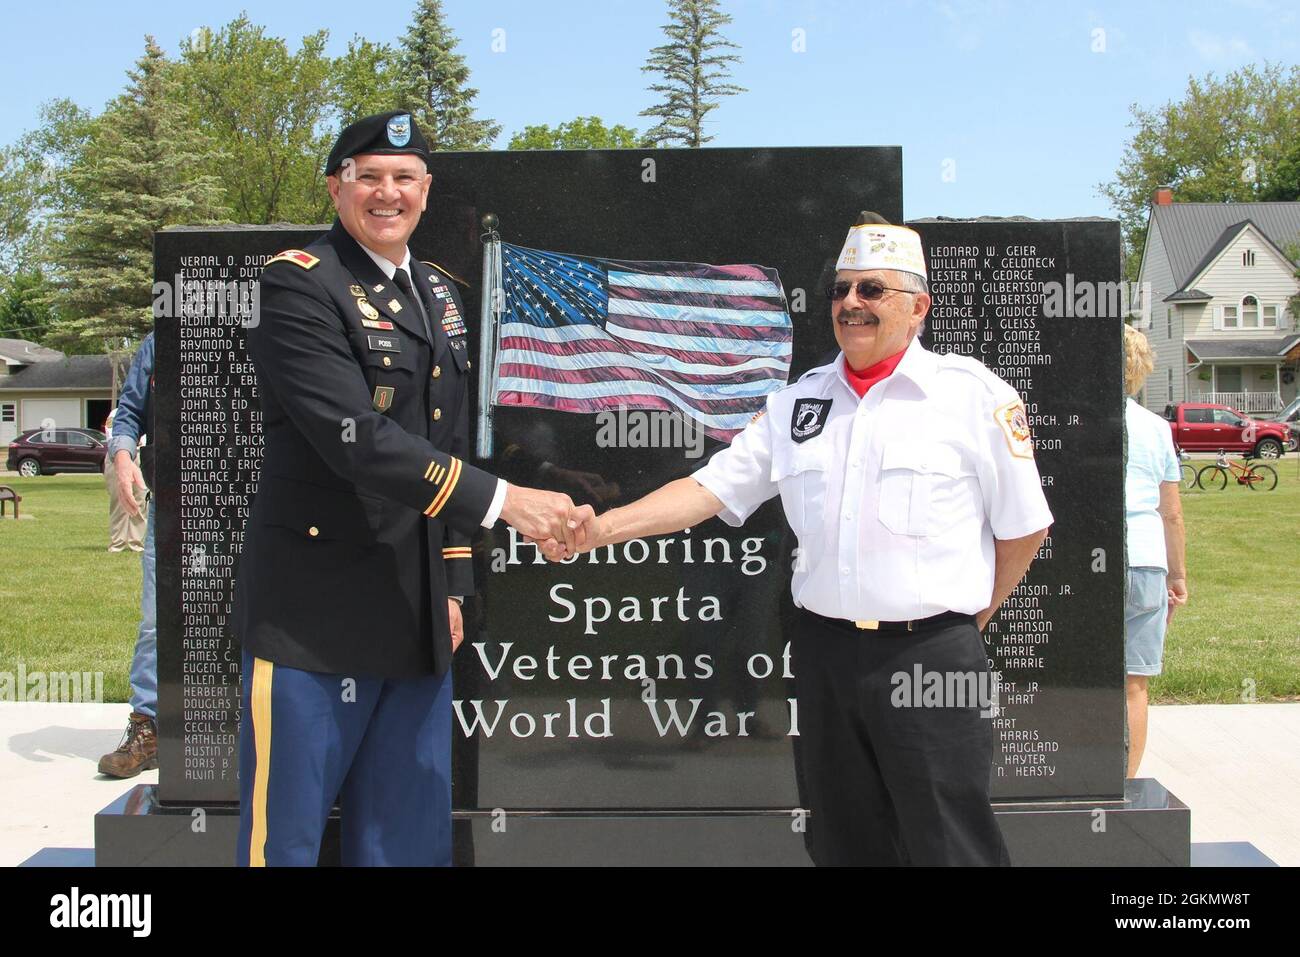 Der Garnisonskommandant von Fort McCoy, Colonel Poss, dankt dem ortsansässigen Veteranen Tom Scheur für seinen Dienst und die Gelegenheit, beim Sparta Memorial Day-Gottesdienst zu sprechen. Stockfoto